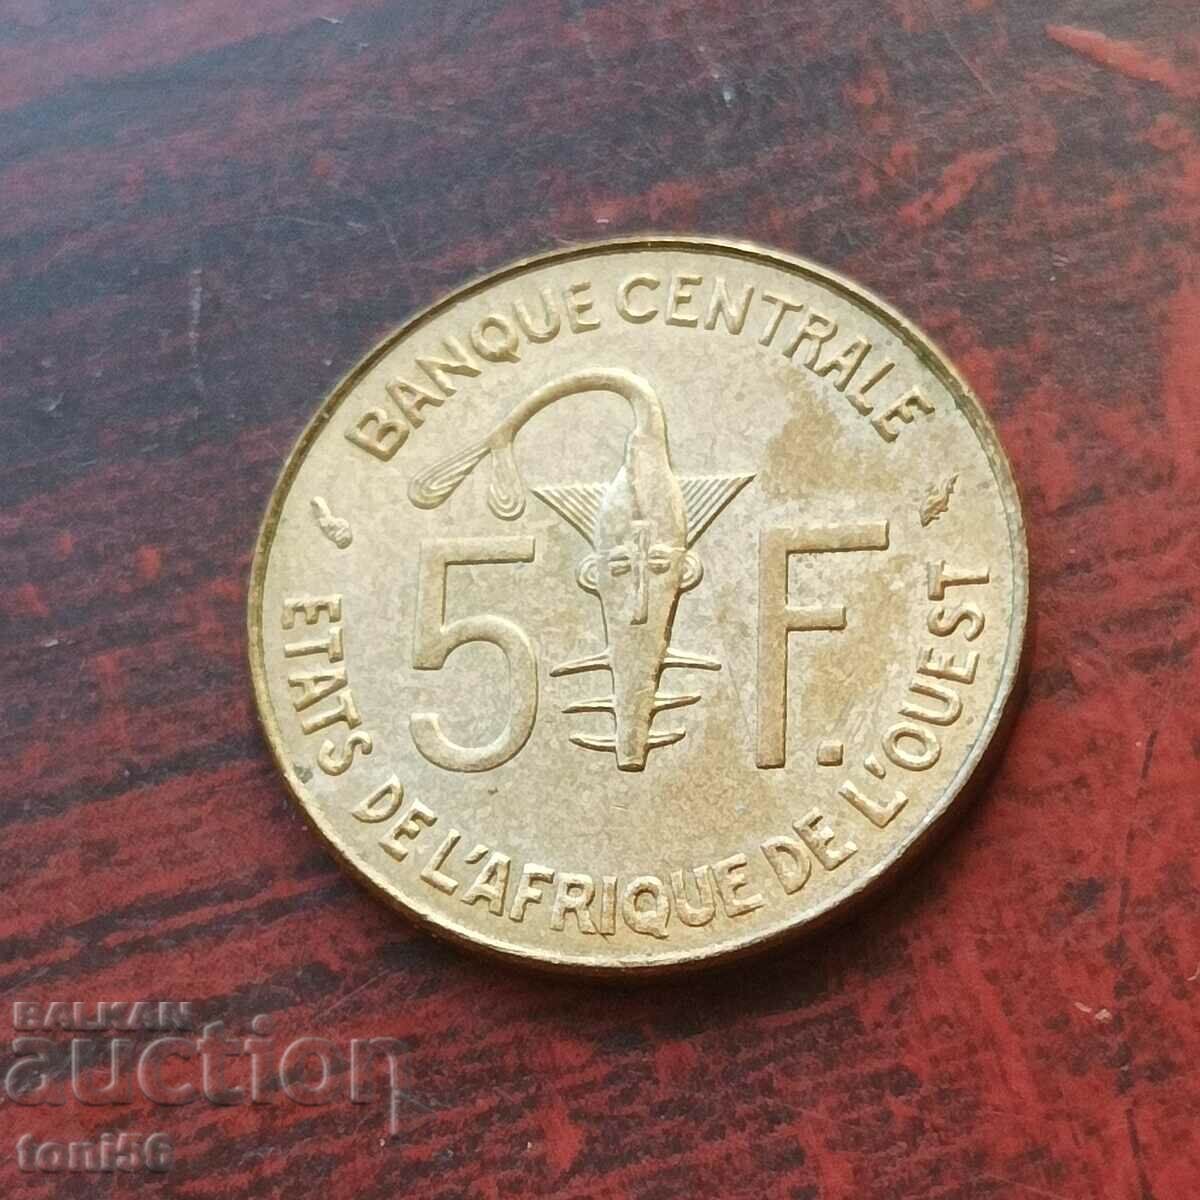 West Africa 5 francs 1975 UNC